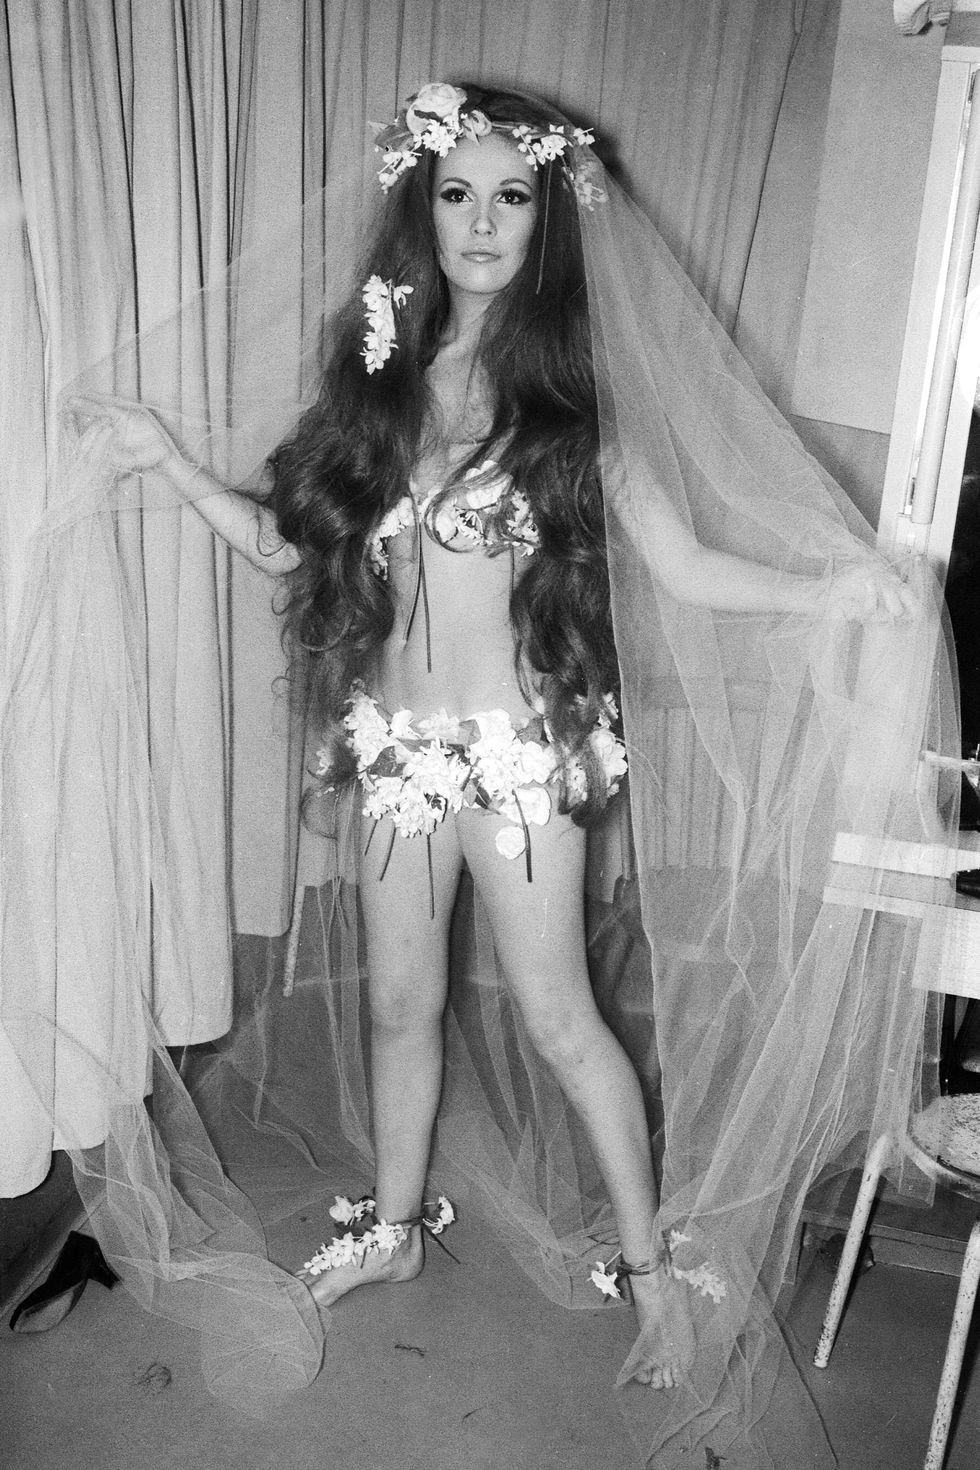 YSL 1968:
Bộ váy cưới lộng lẫy này, được làm hoàn toàn bằng hoa, bao gồm hoa
trang trí nơi mắt cá chân và khăn che mặt kèm vương miện hoa. Bộ
váy cưới này mang vẻ đẹp du mục của thập niên 60.